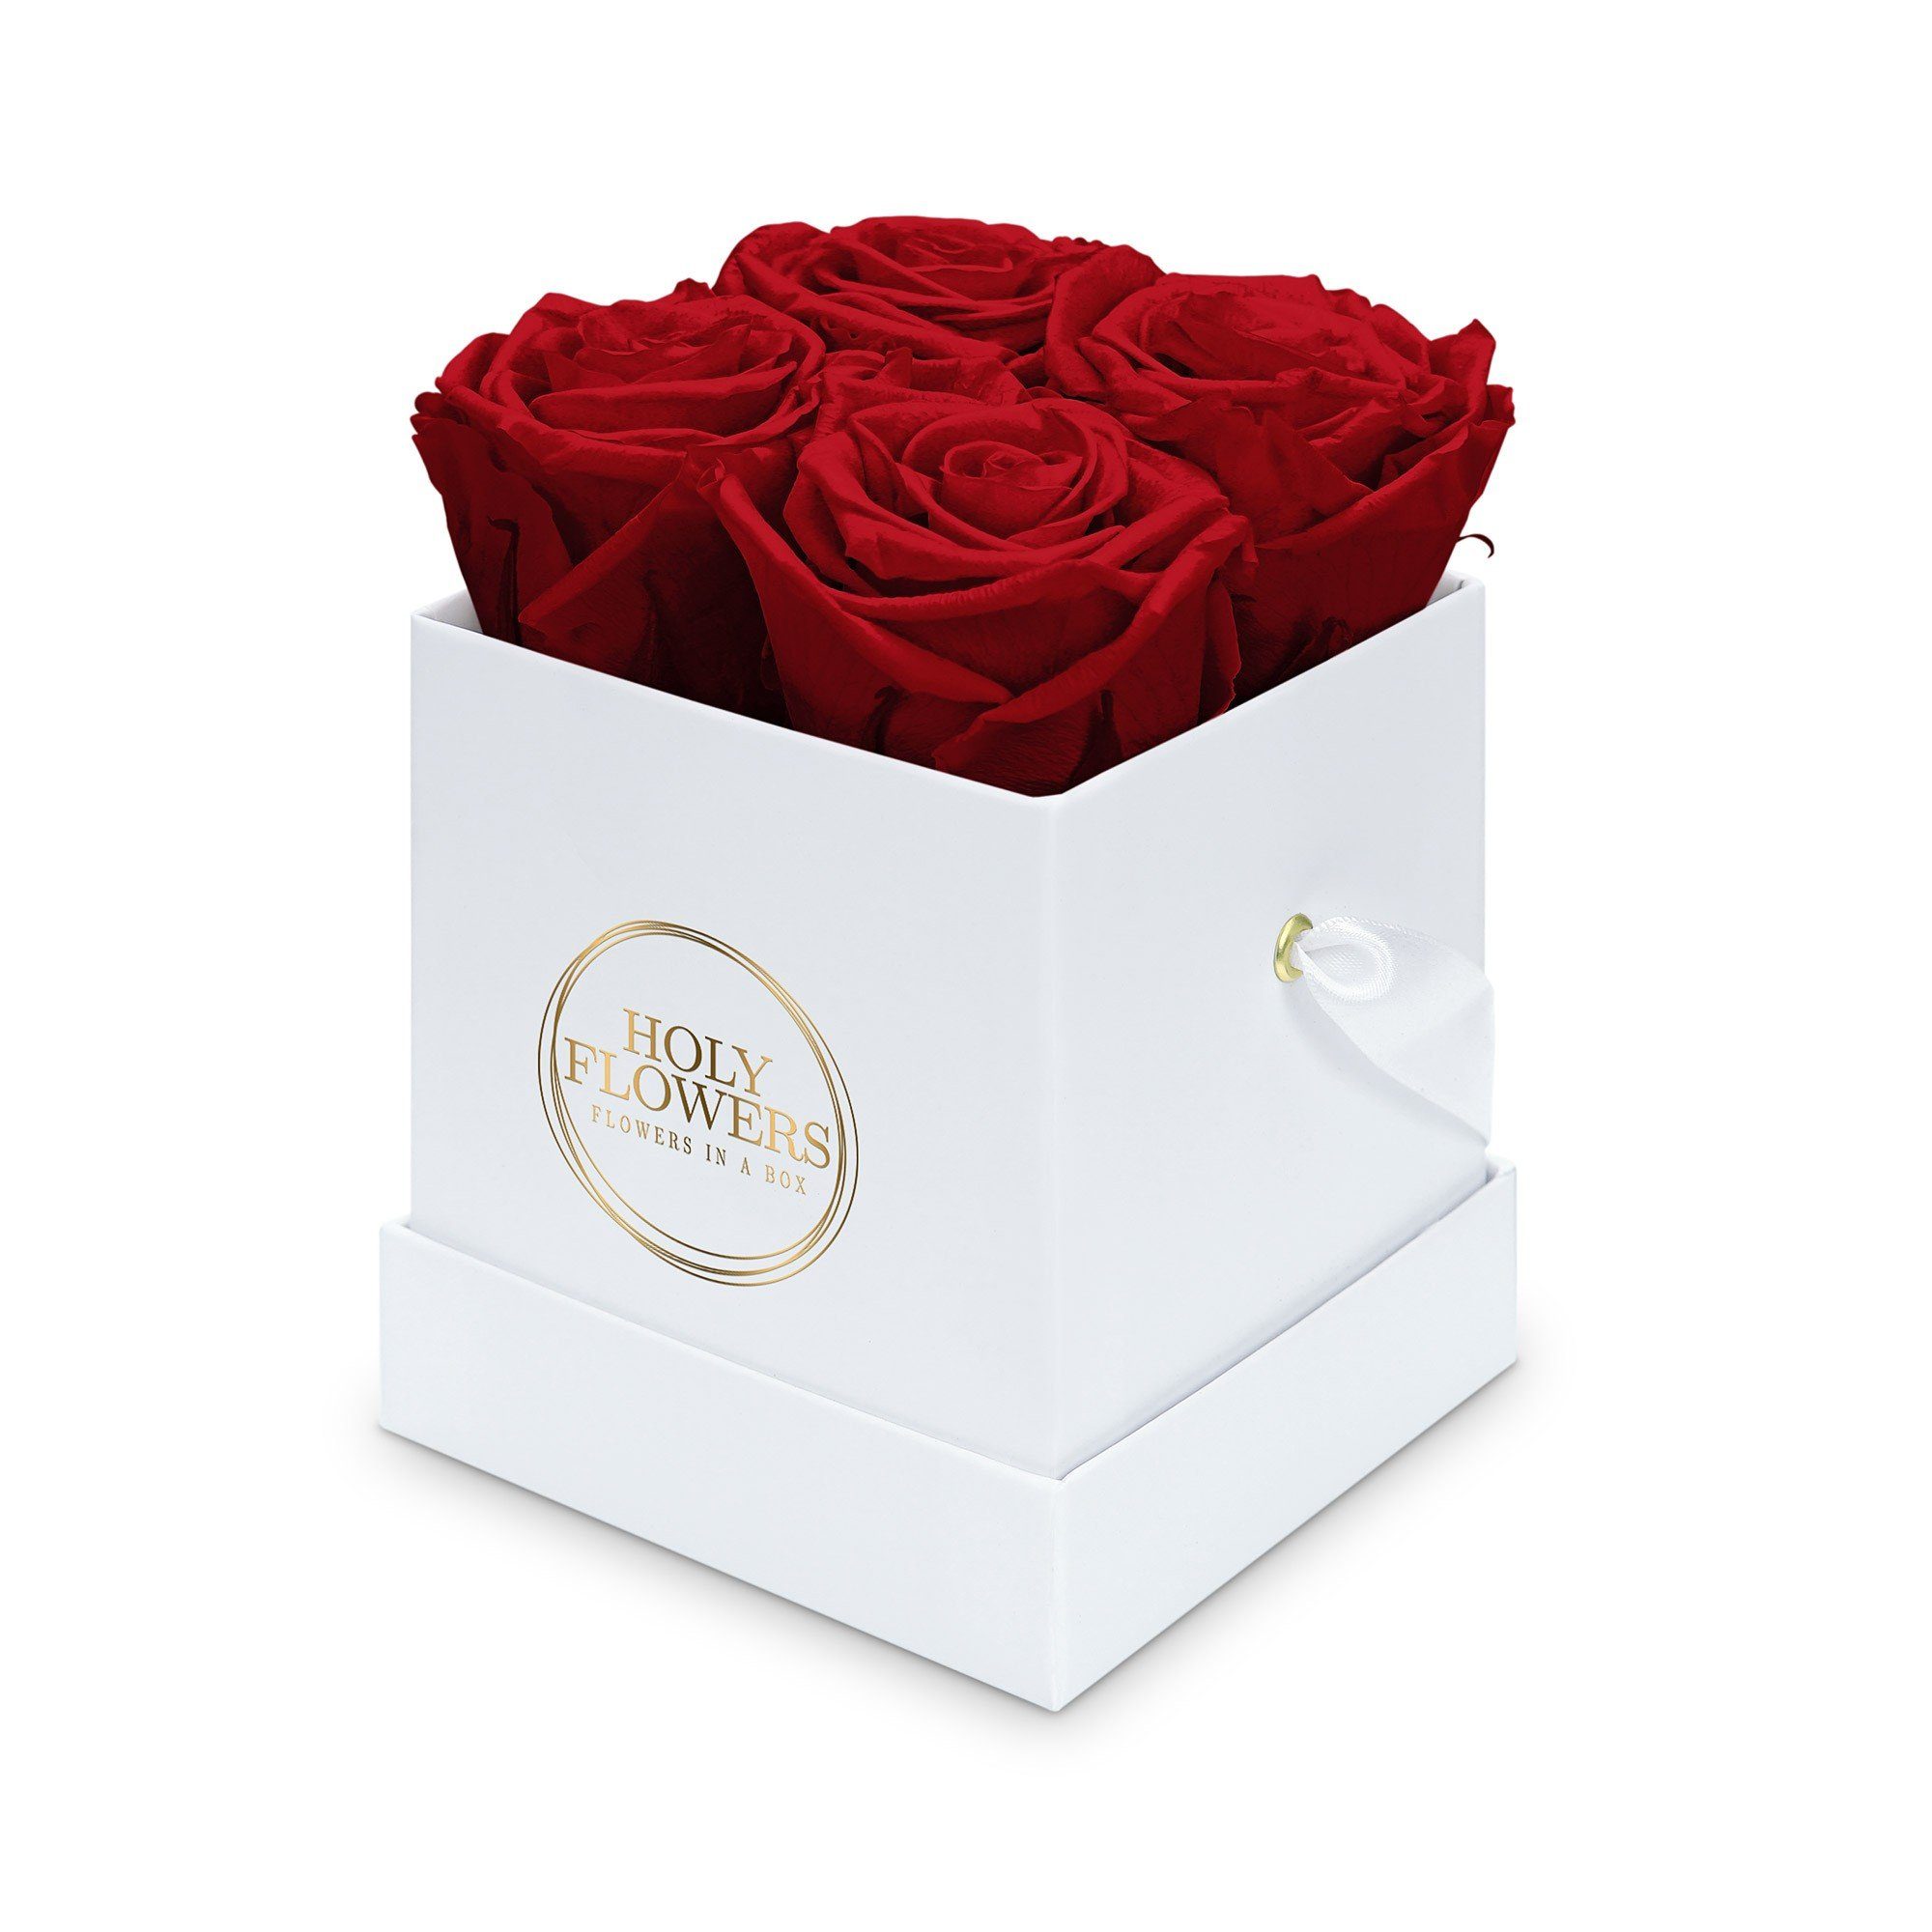 Kunstblume Eckige Rosenbox in weiß mit 4 Infinity Rosen I 3 Jahre haltbar I Echte, duftende konservierte Blumen I by Raul Richter Infinity Rose, Holy Flowers, Höhe 11 cm Heritage Red